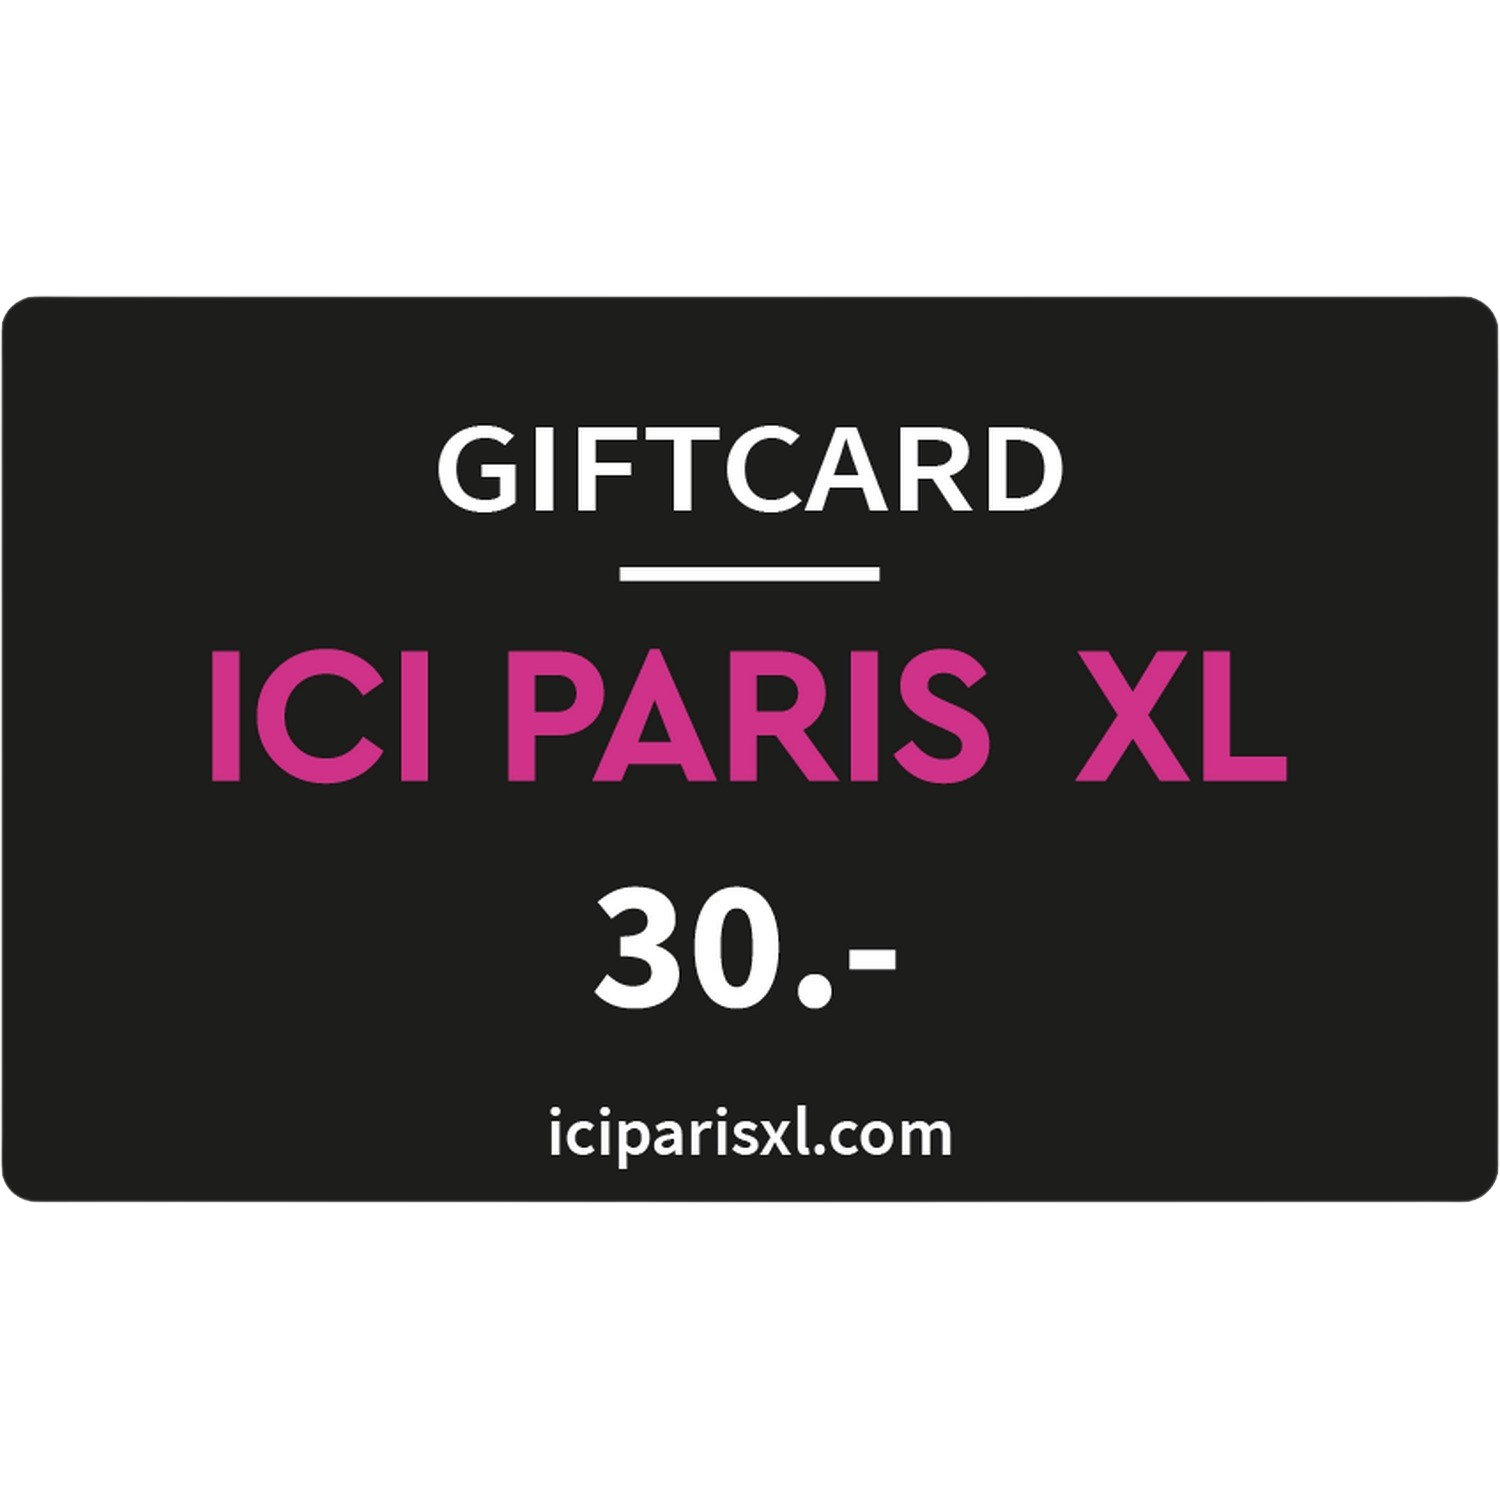 Ici Paris Xl Giftcard 30 Euro